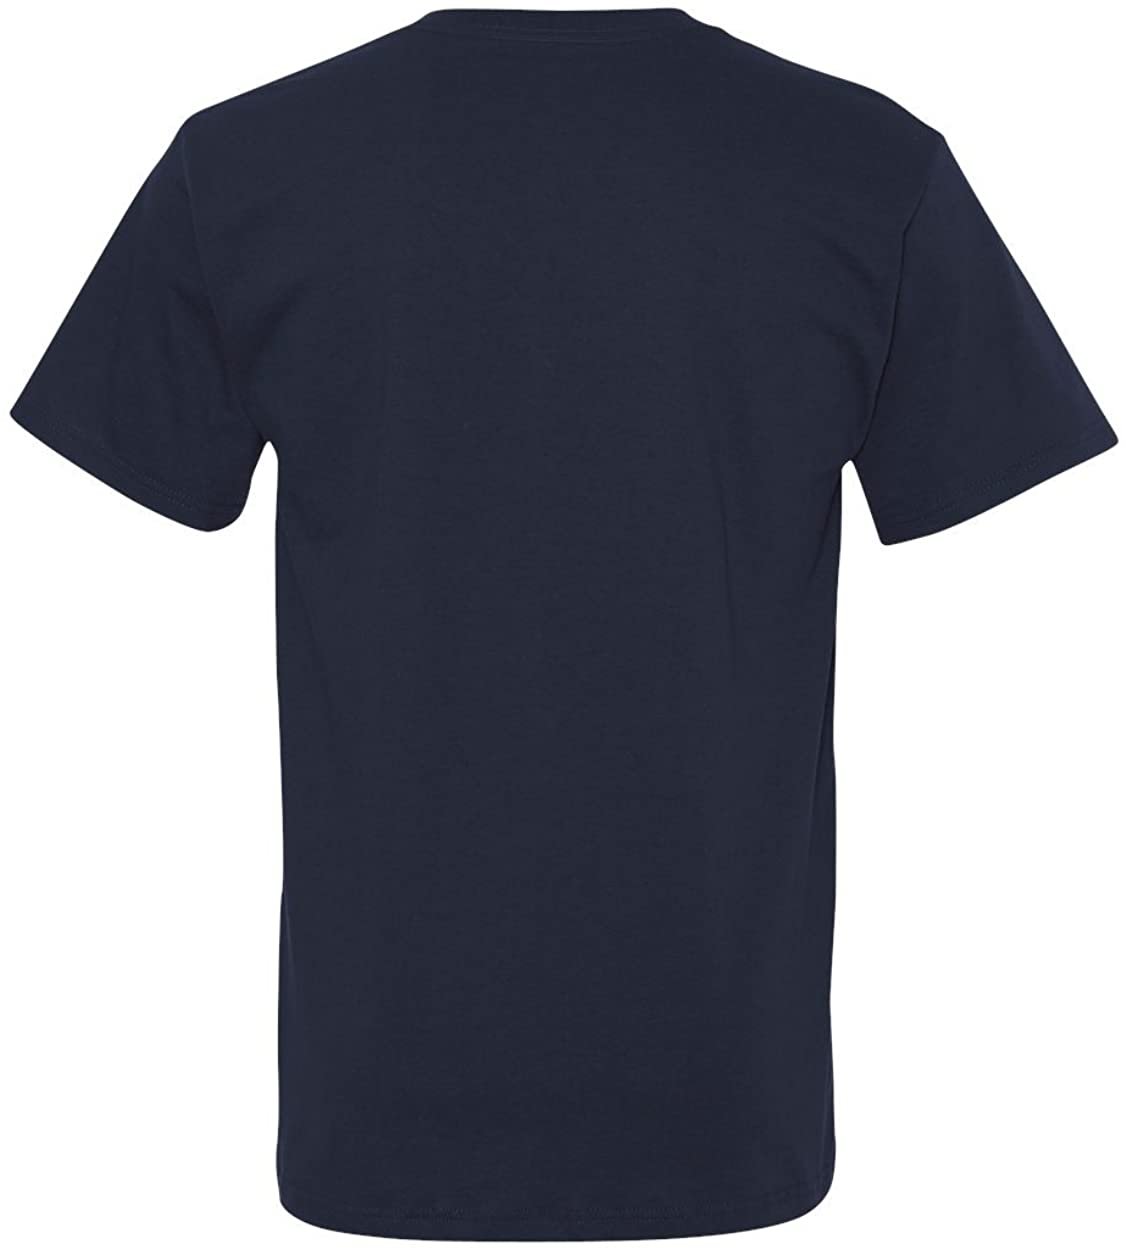 Fruit of the Loom Men's 6 Pack V-Neck T-Shirt, Navy, X-Large | eBay